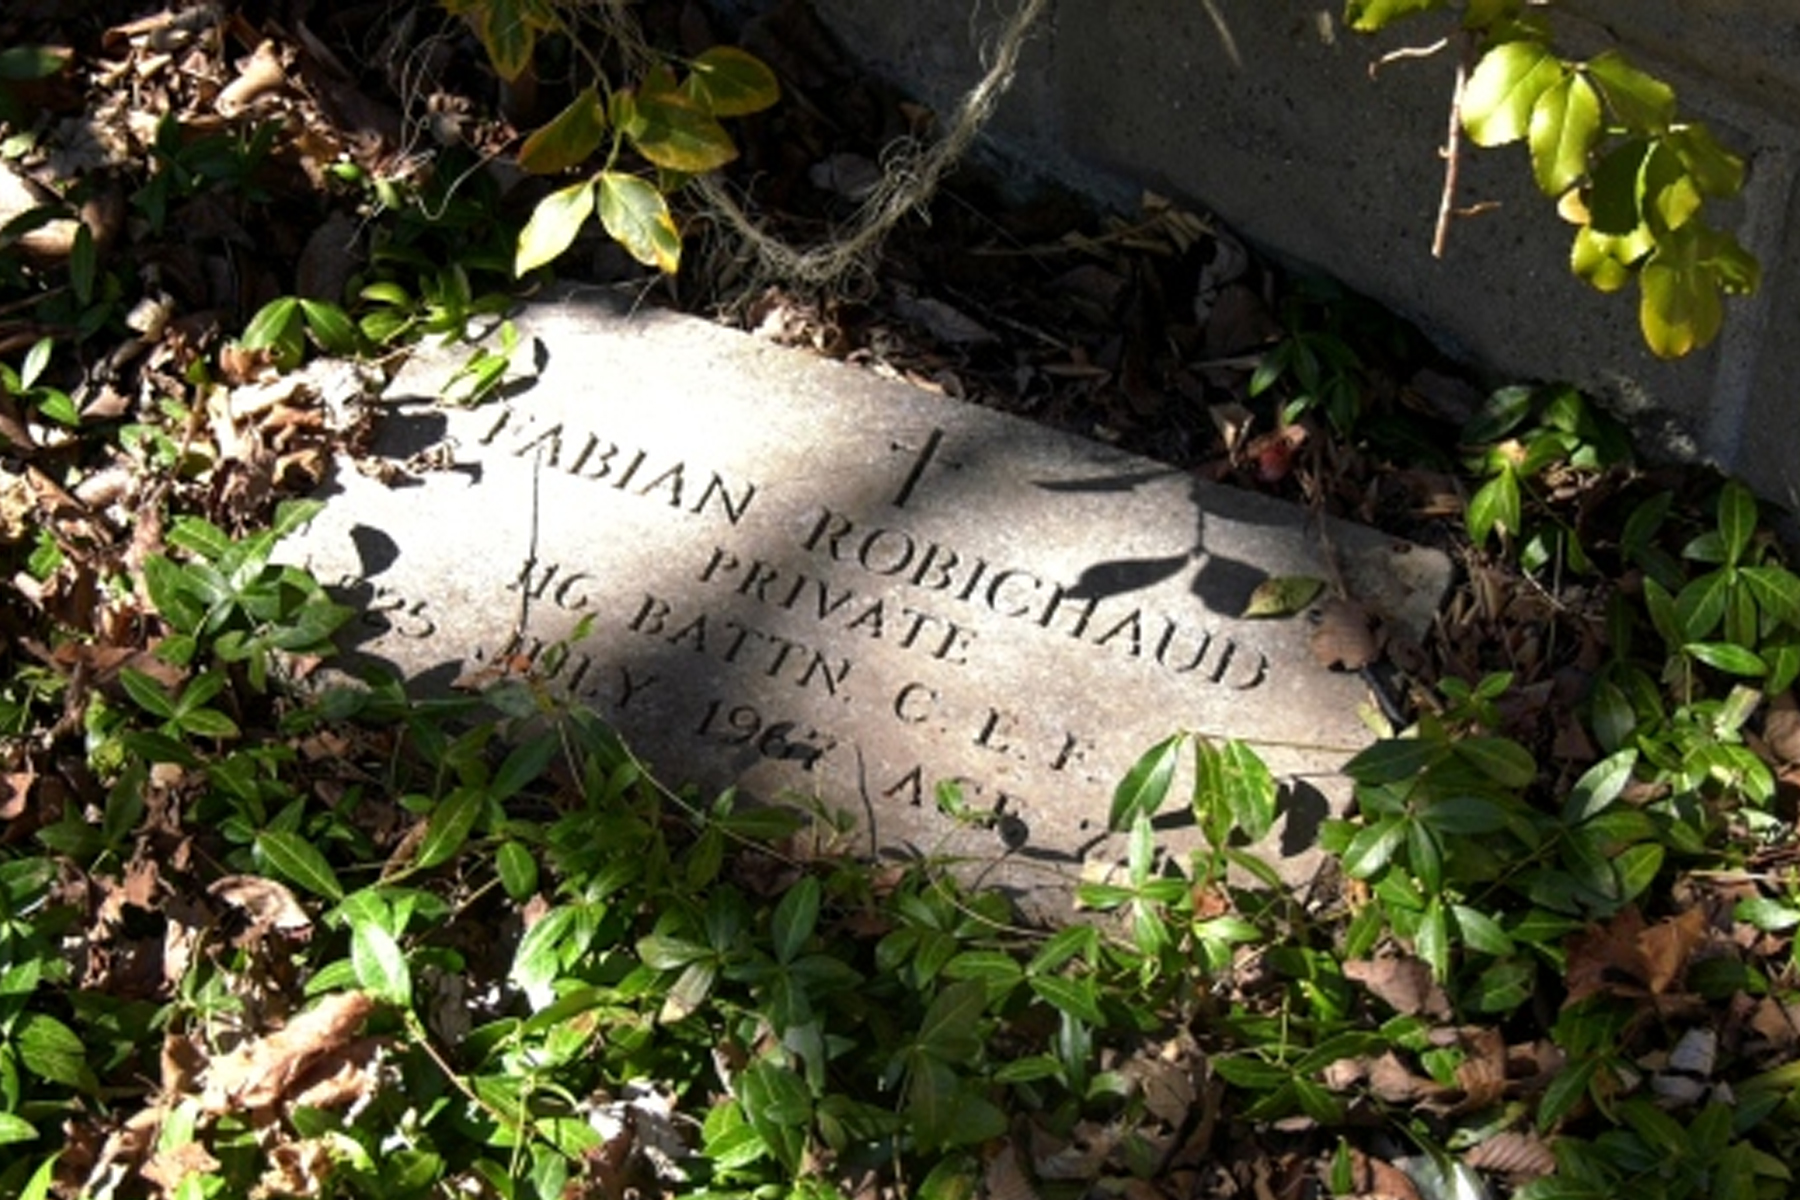 سنگ قبر کشف شده در حیاط پشتی یک خانه مسکونی دریچه ای به تاریخ تورنتو باز کرد